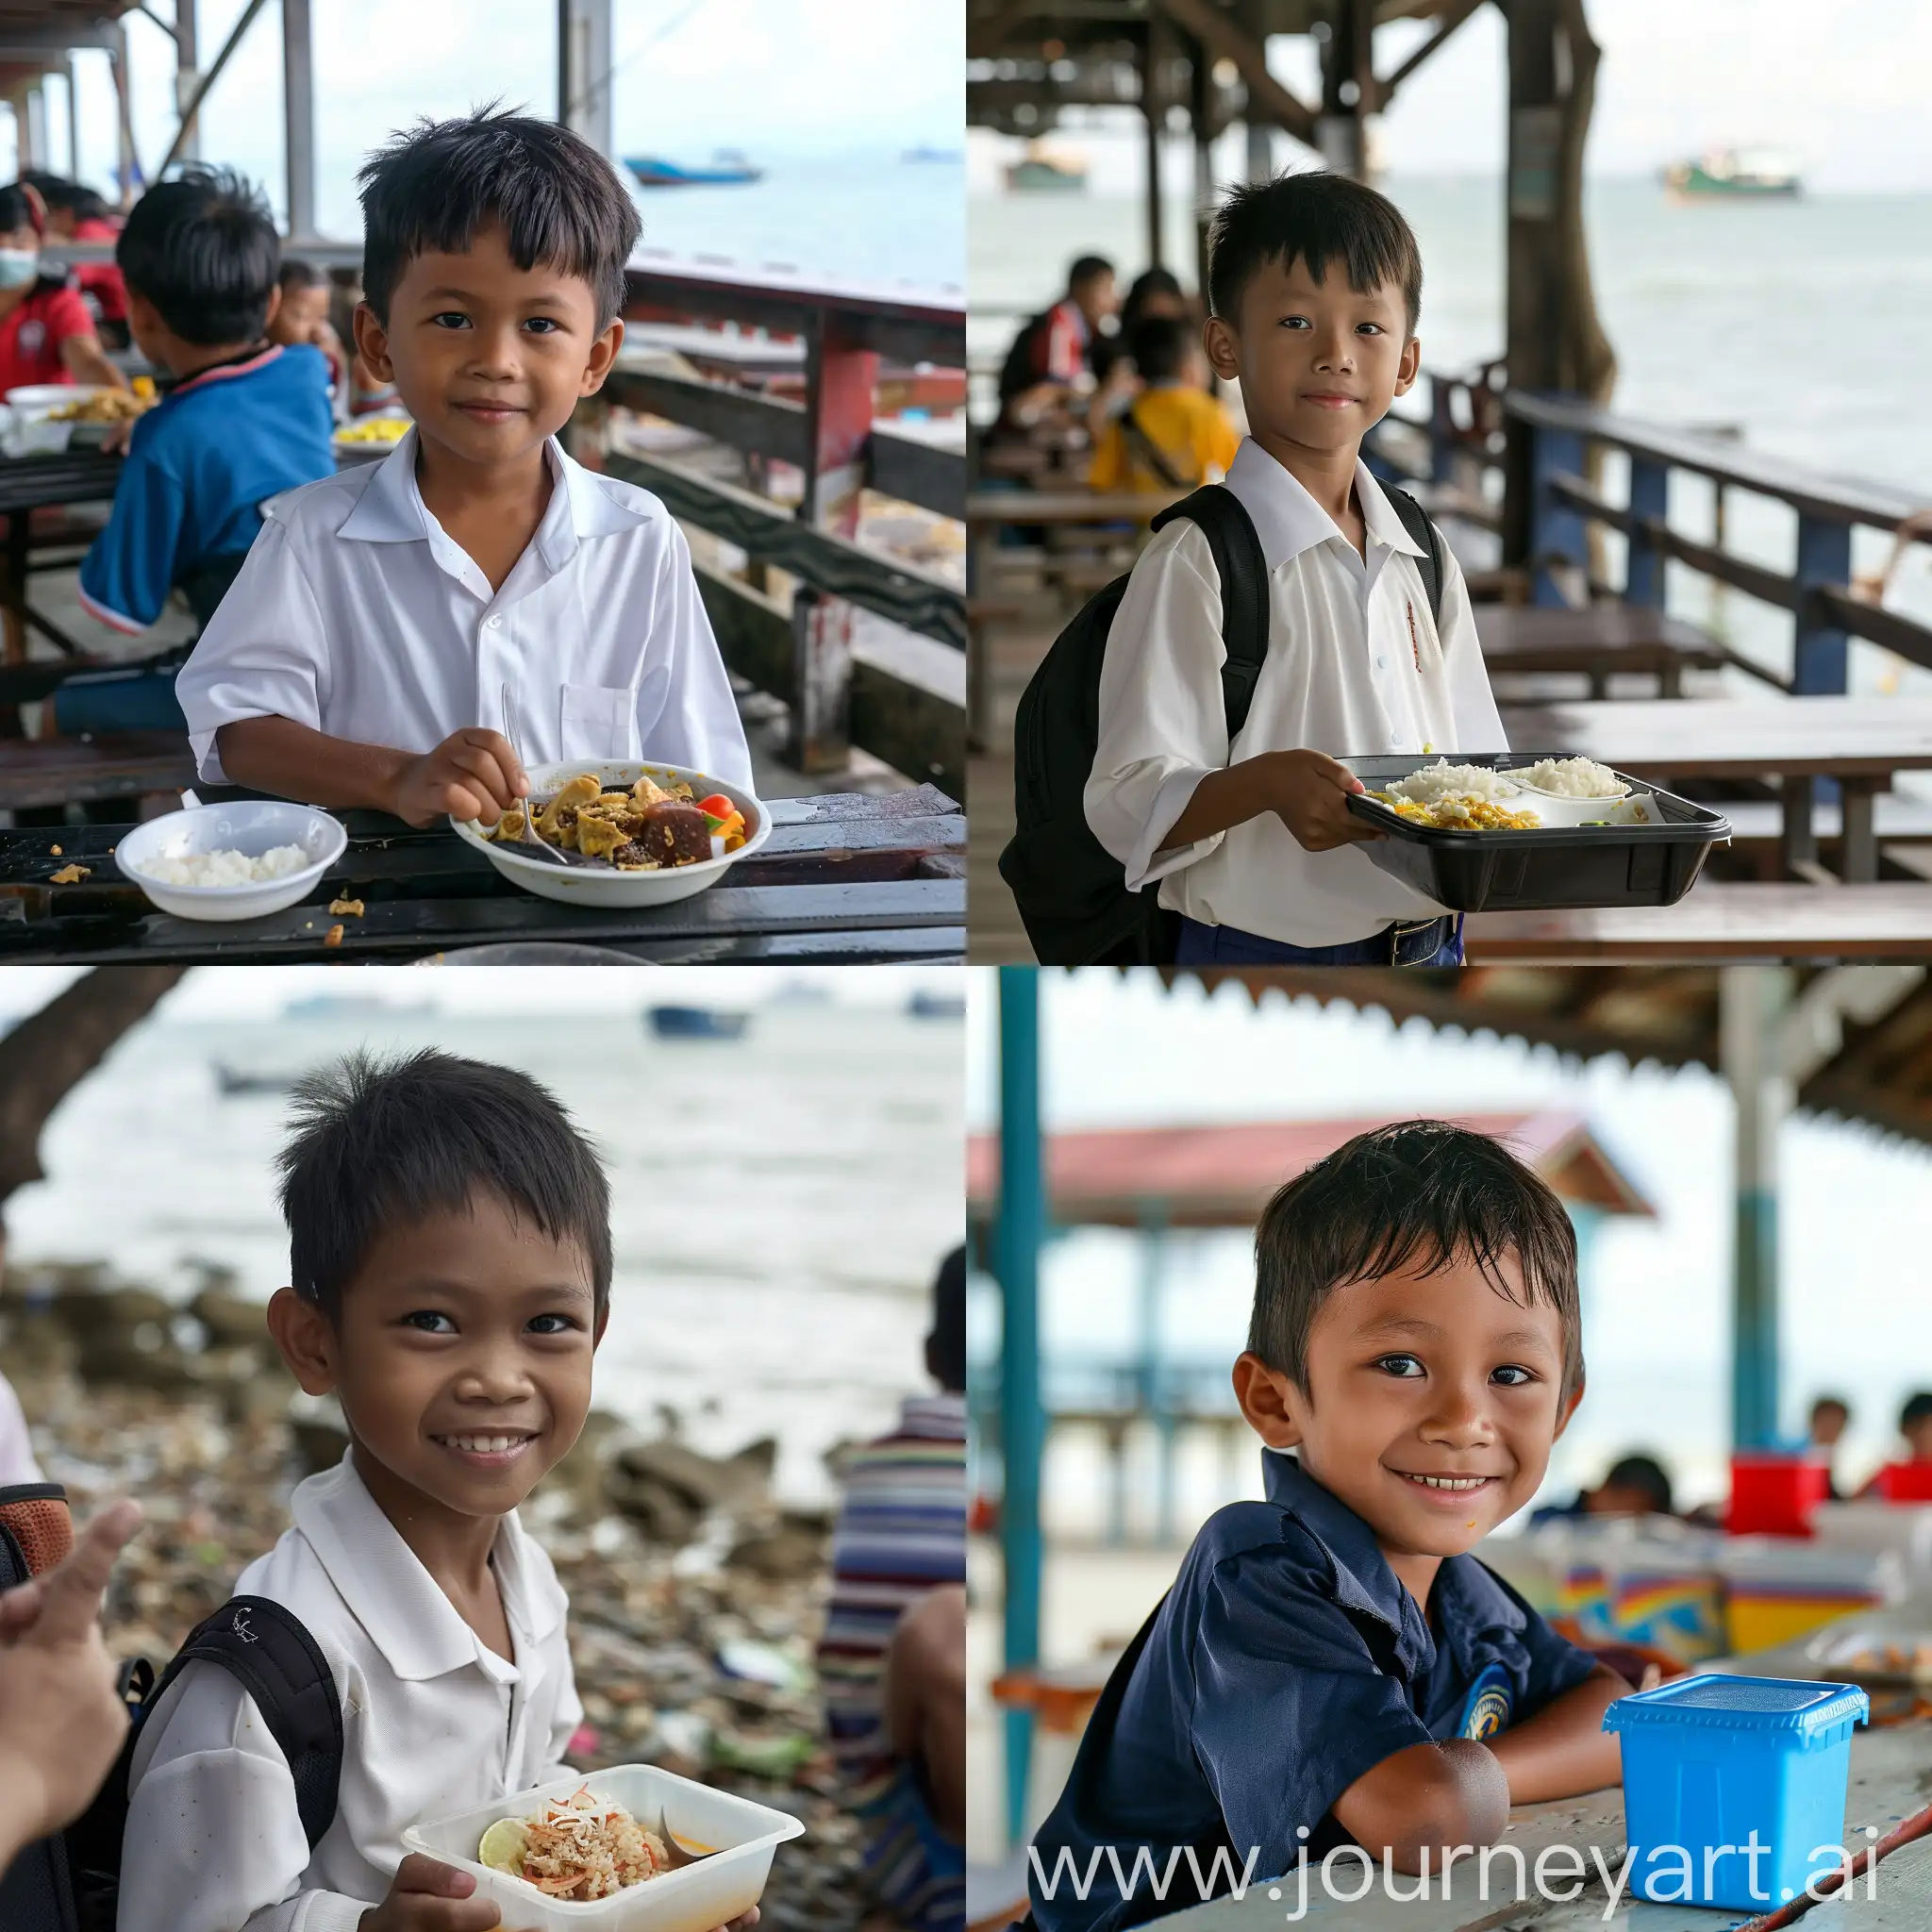 Malaysian-School-Boy-Enjoying-Lunch-by-the-Seaside